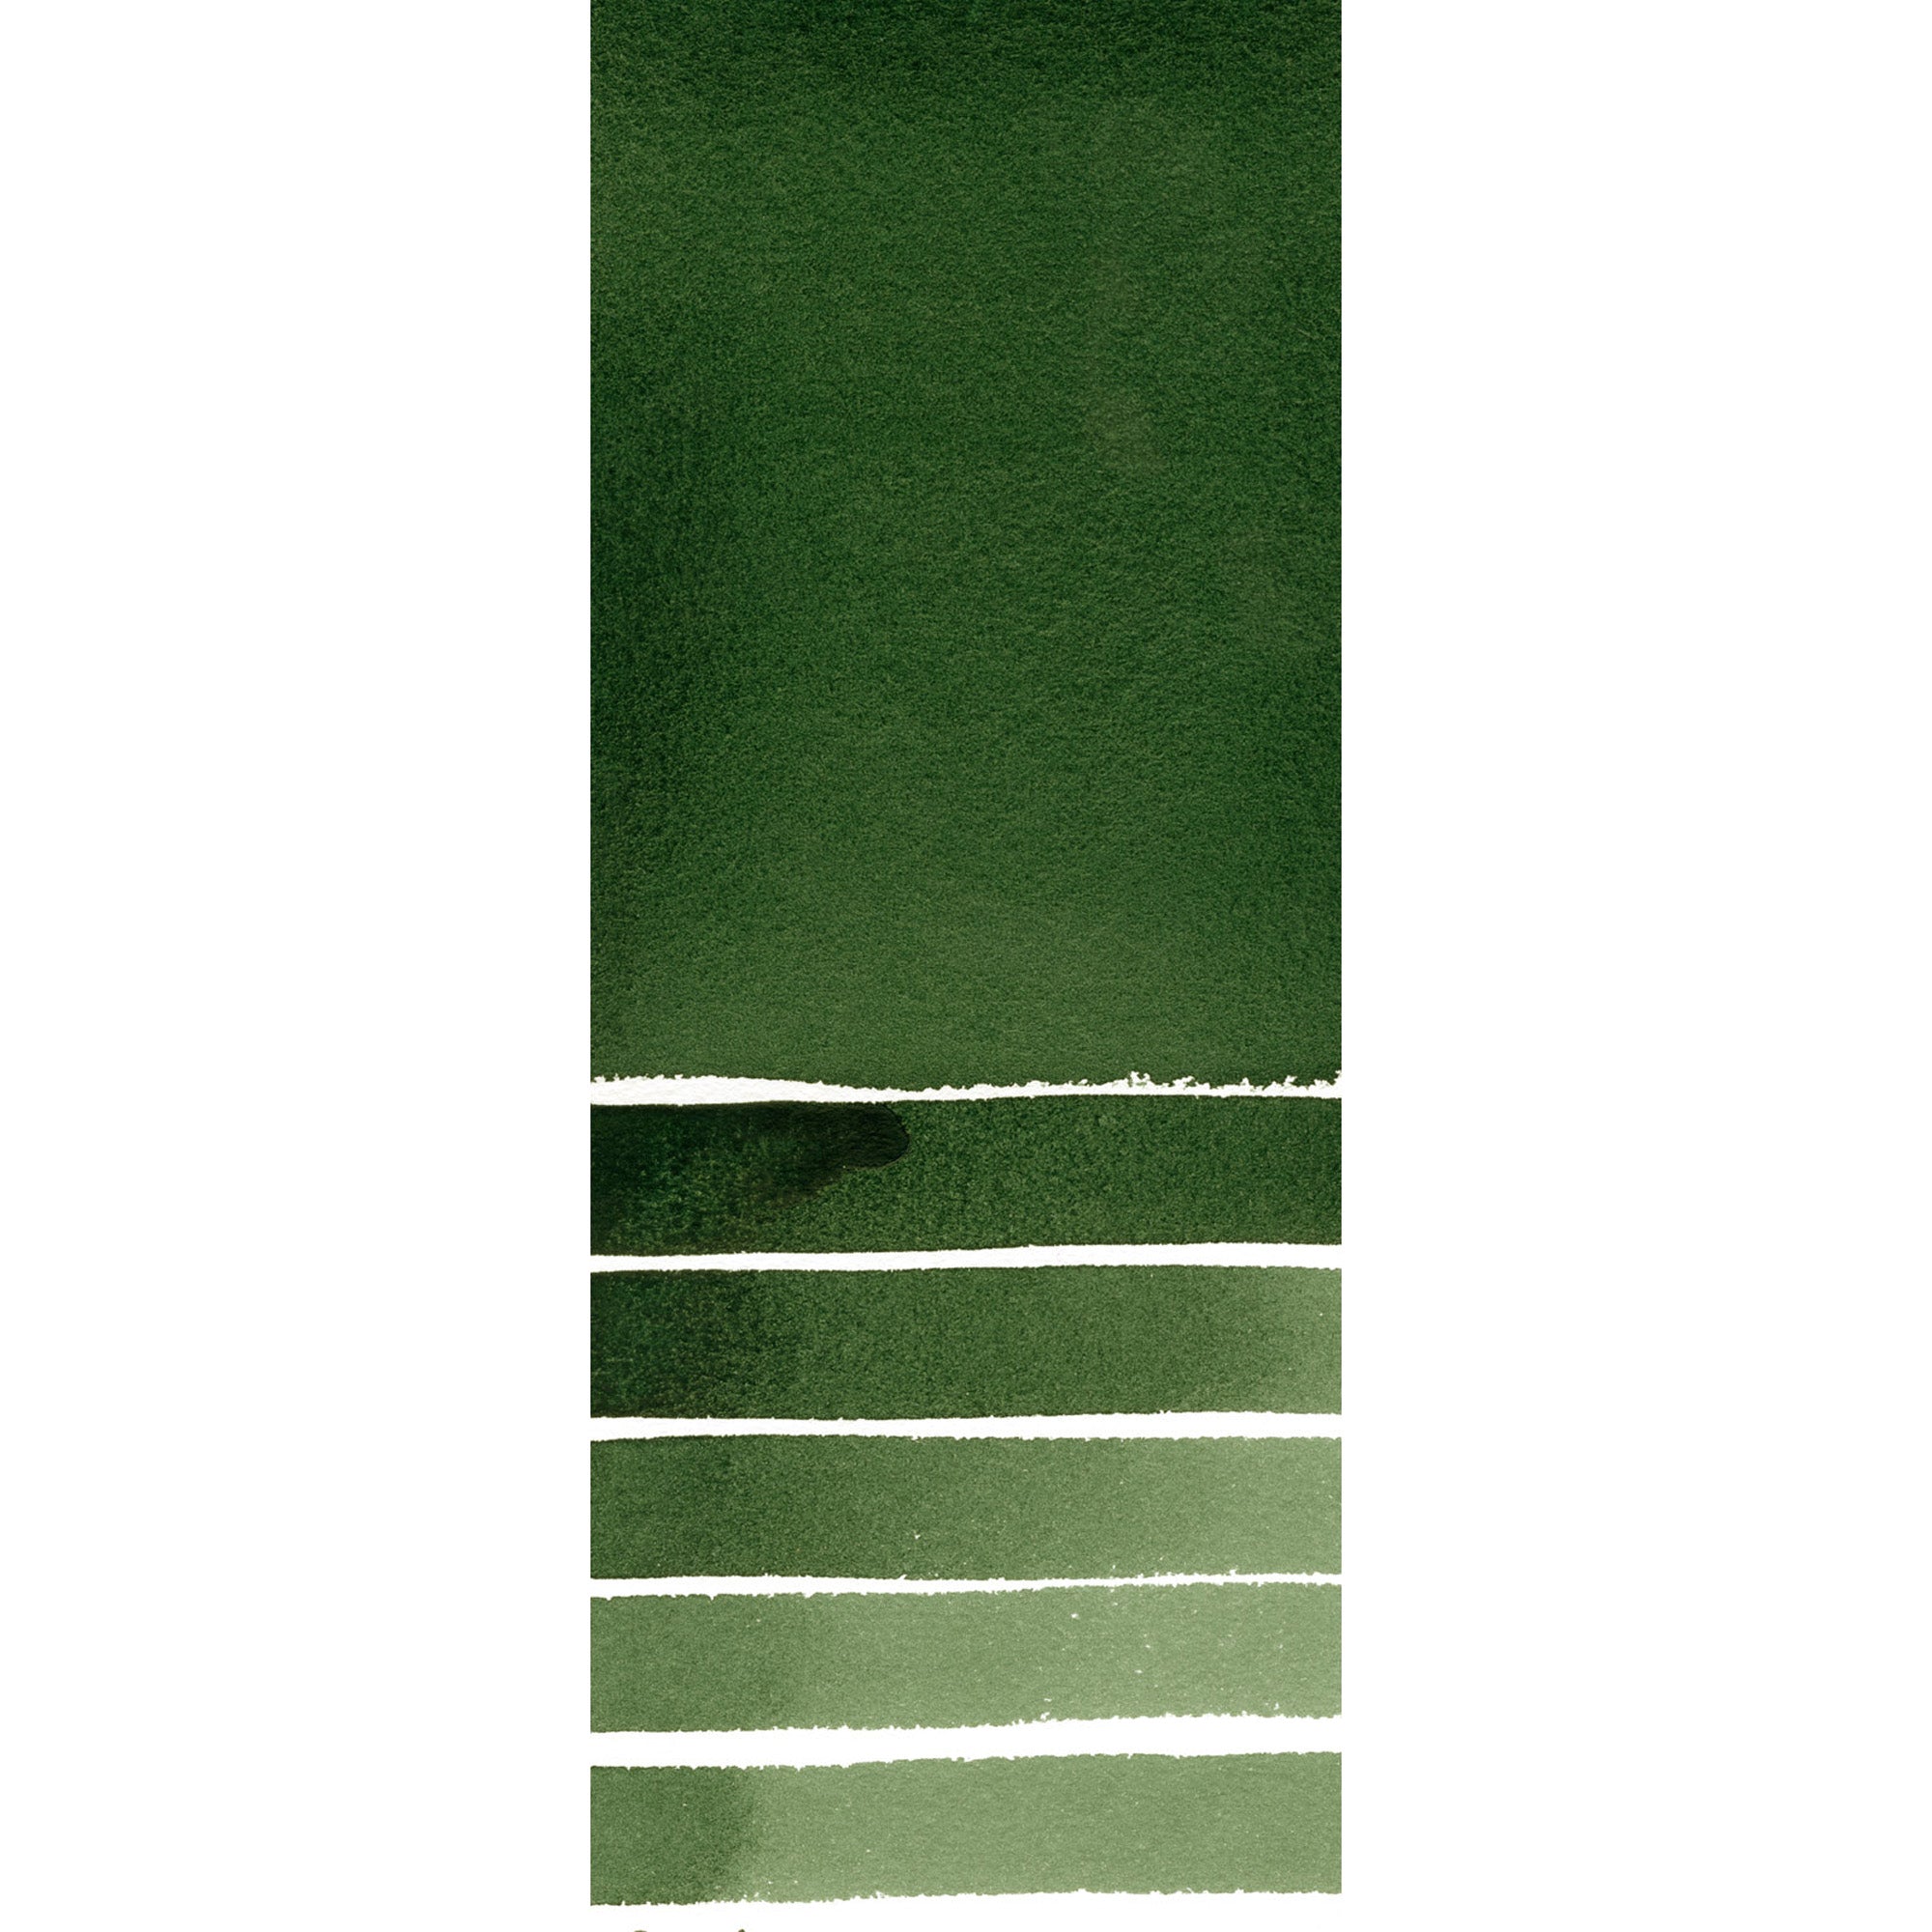 Daniel Smith : Watercolor - Deep Sap Green